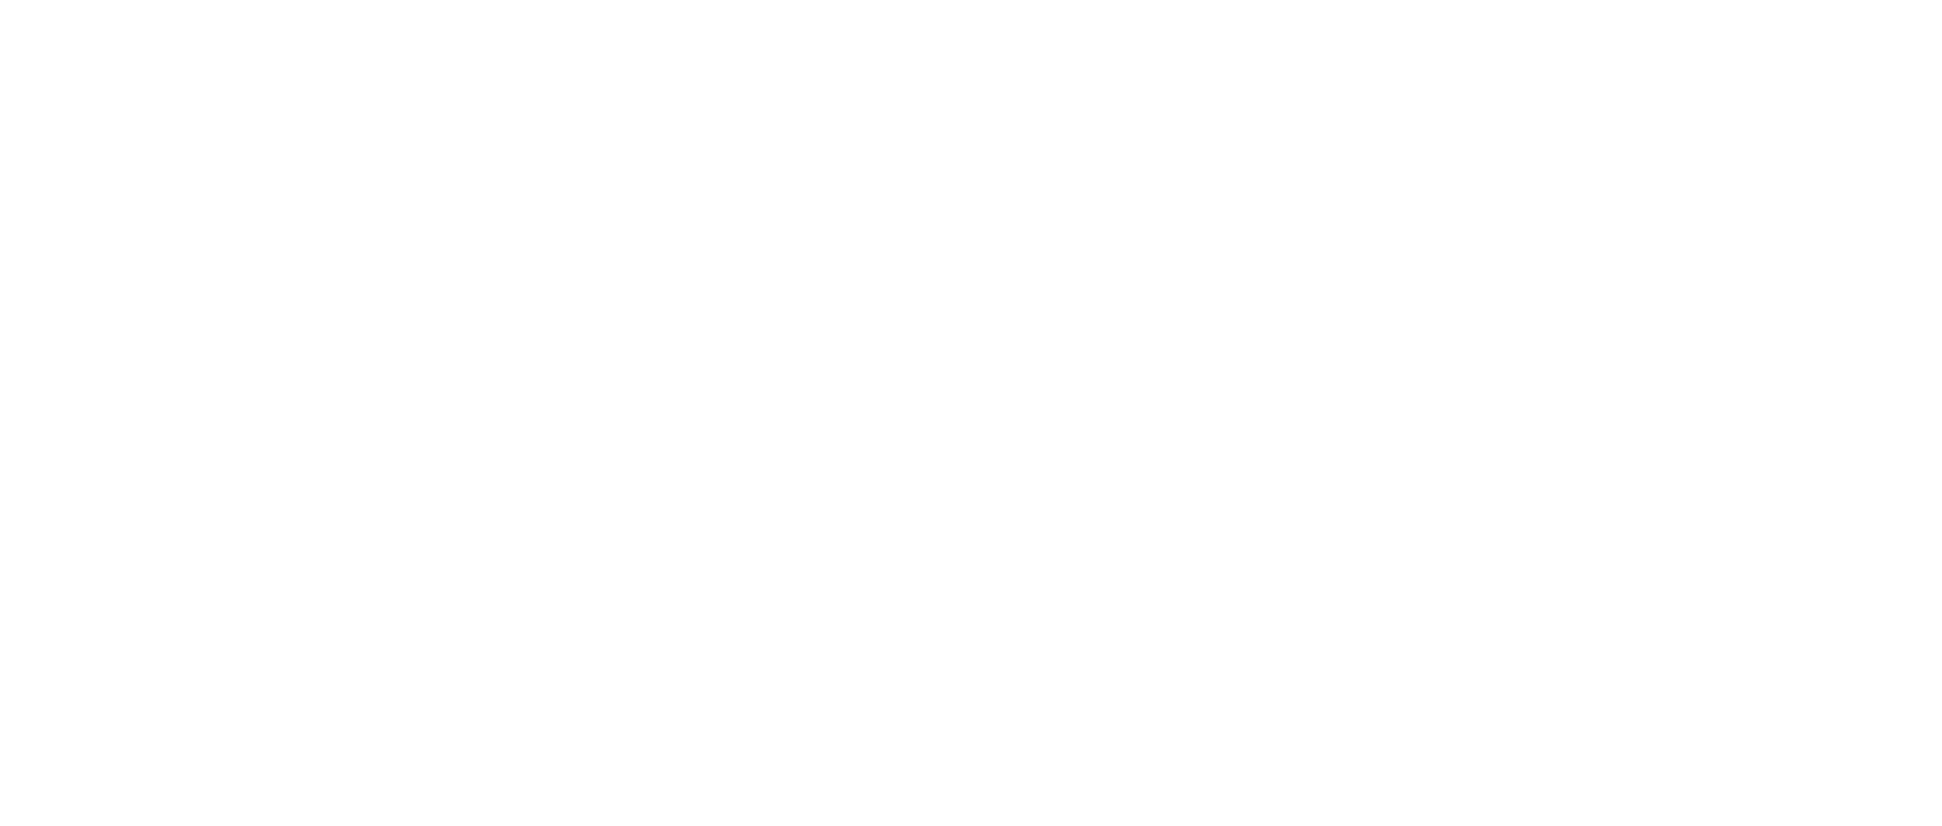 https://szabadulopalya.hu/wp-content/uploads/2022/09/varazslo_iskola.png